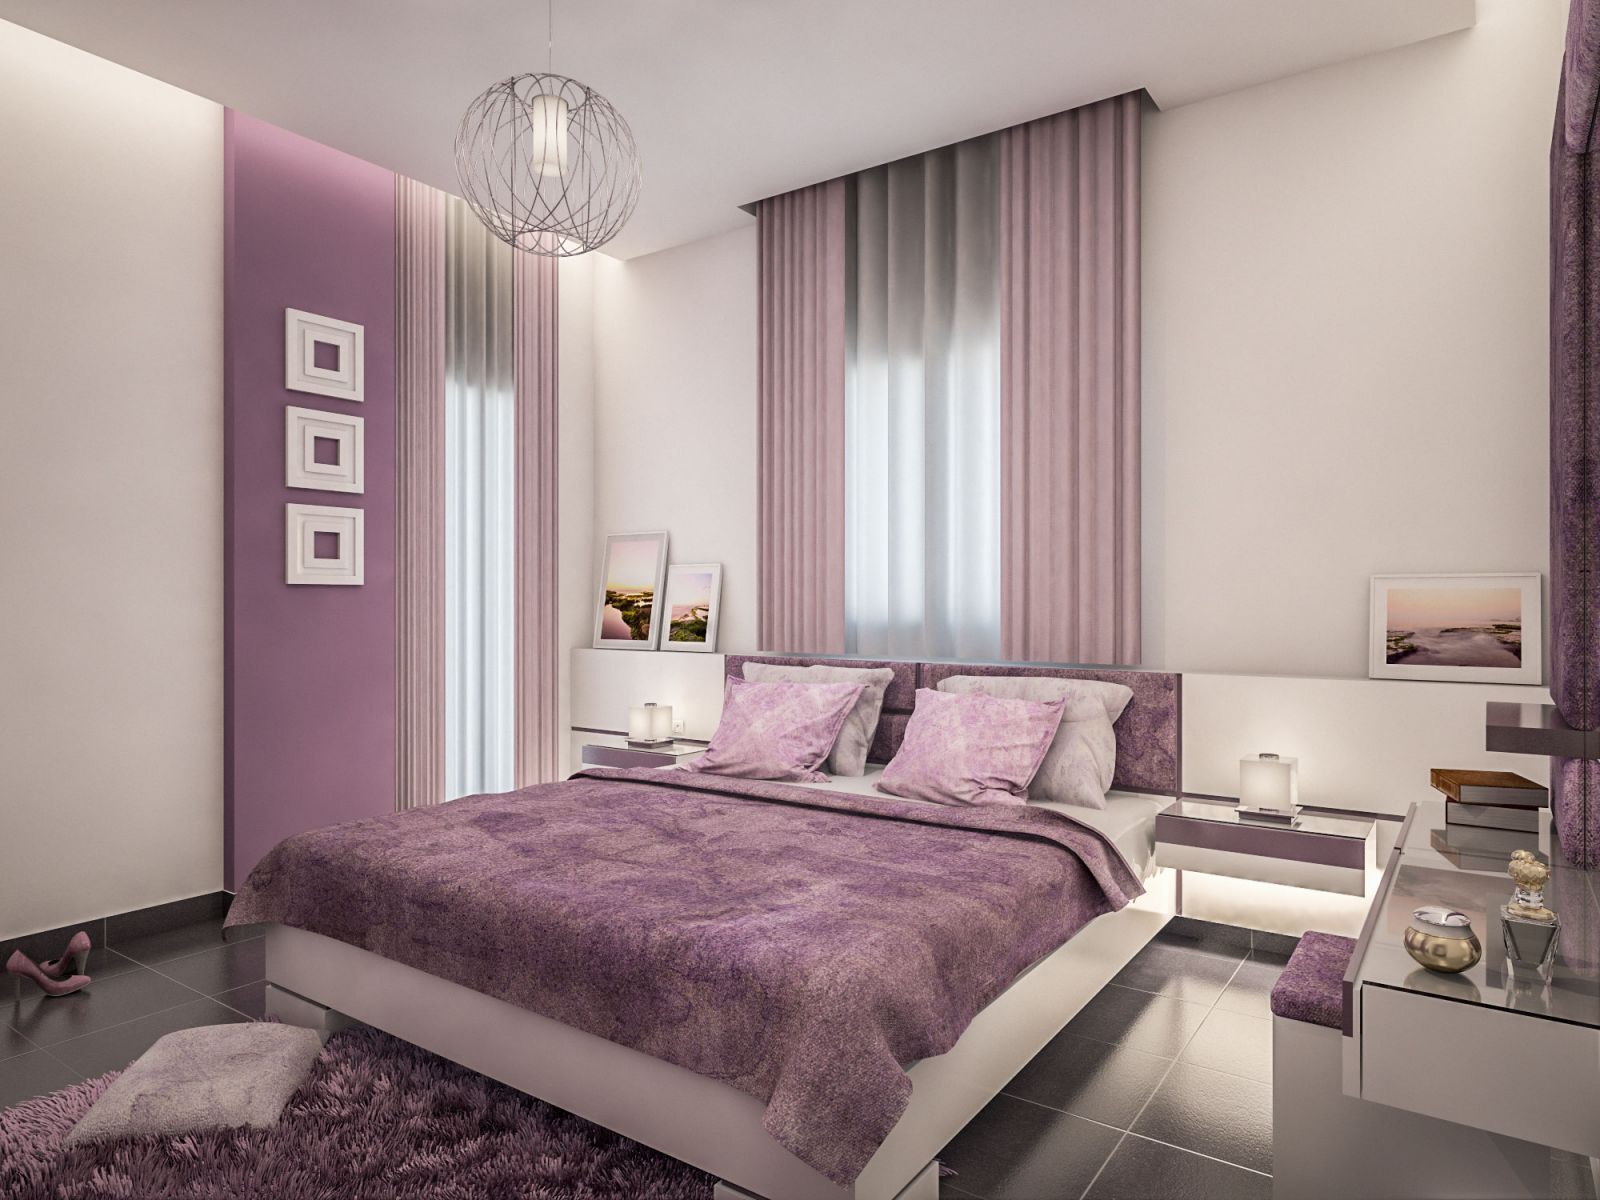 Bố trí nội thất màu tím với chất liệu nhung cho phòng ngủ